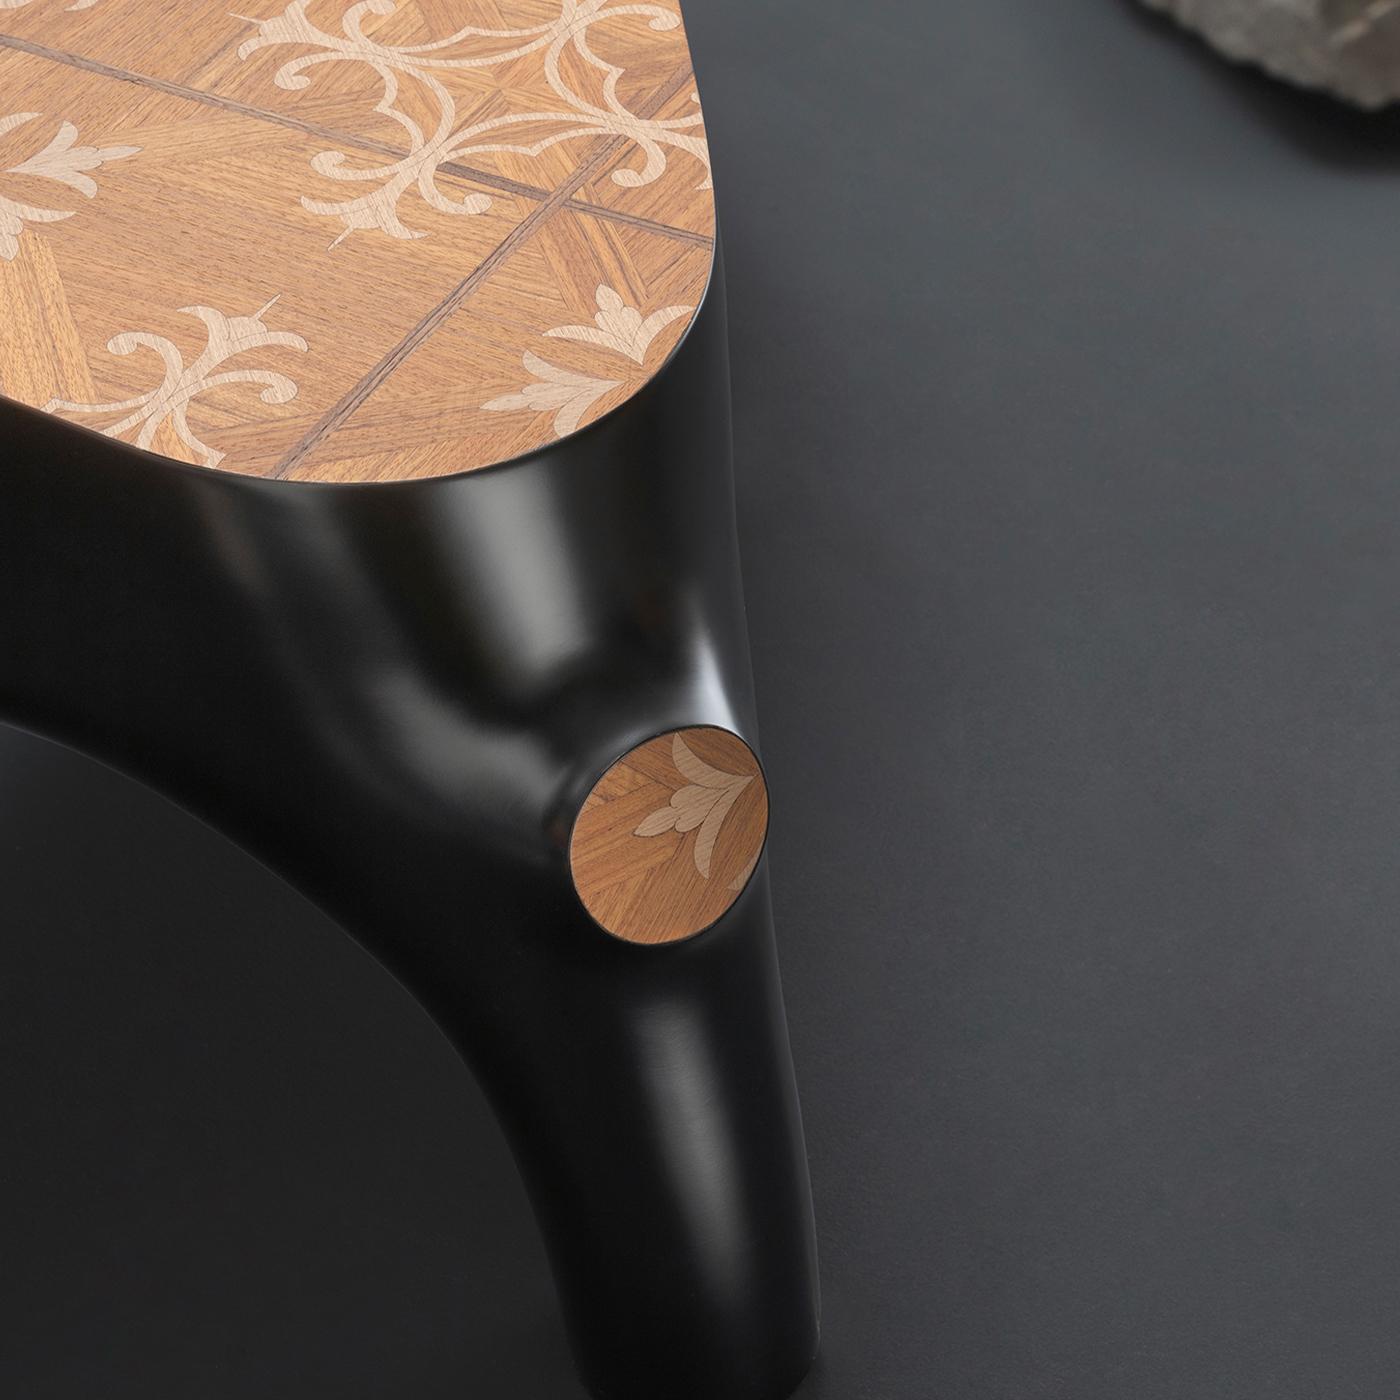 Infusée d'une allure résolument naturaliste, cette table basse constitue un ajout vraiment original et élégant à tout décor avec sa forme irrégulière inspirée d'une souche d'arbre. Conçue par l'artiste Marcantonio pour la collection Wooderkammer,